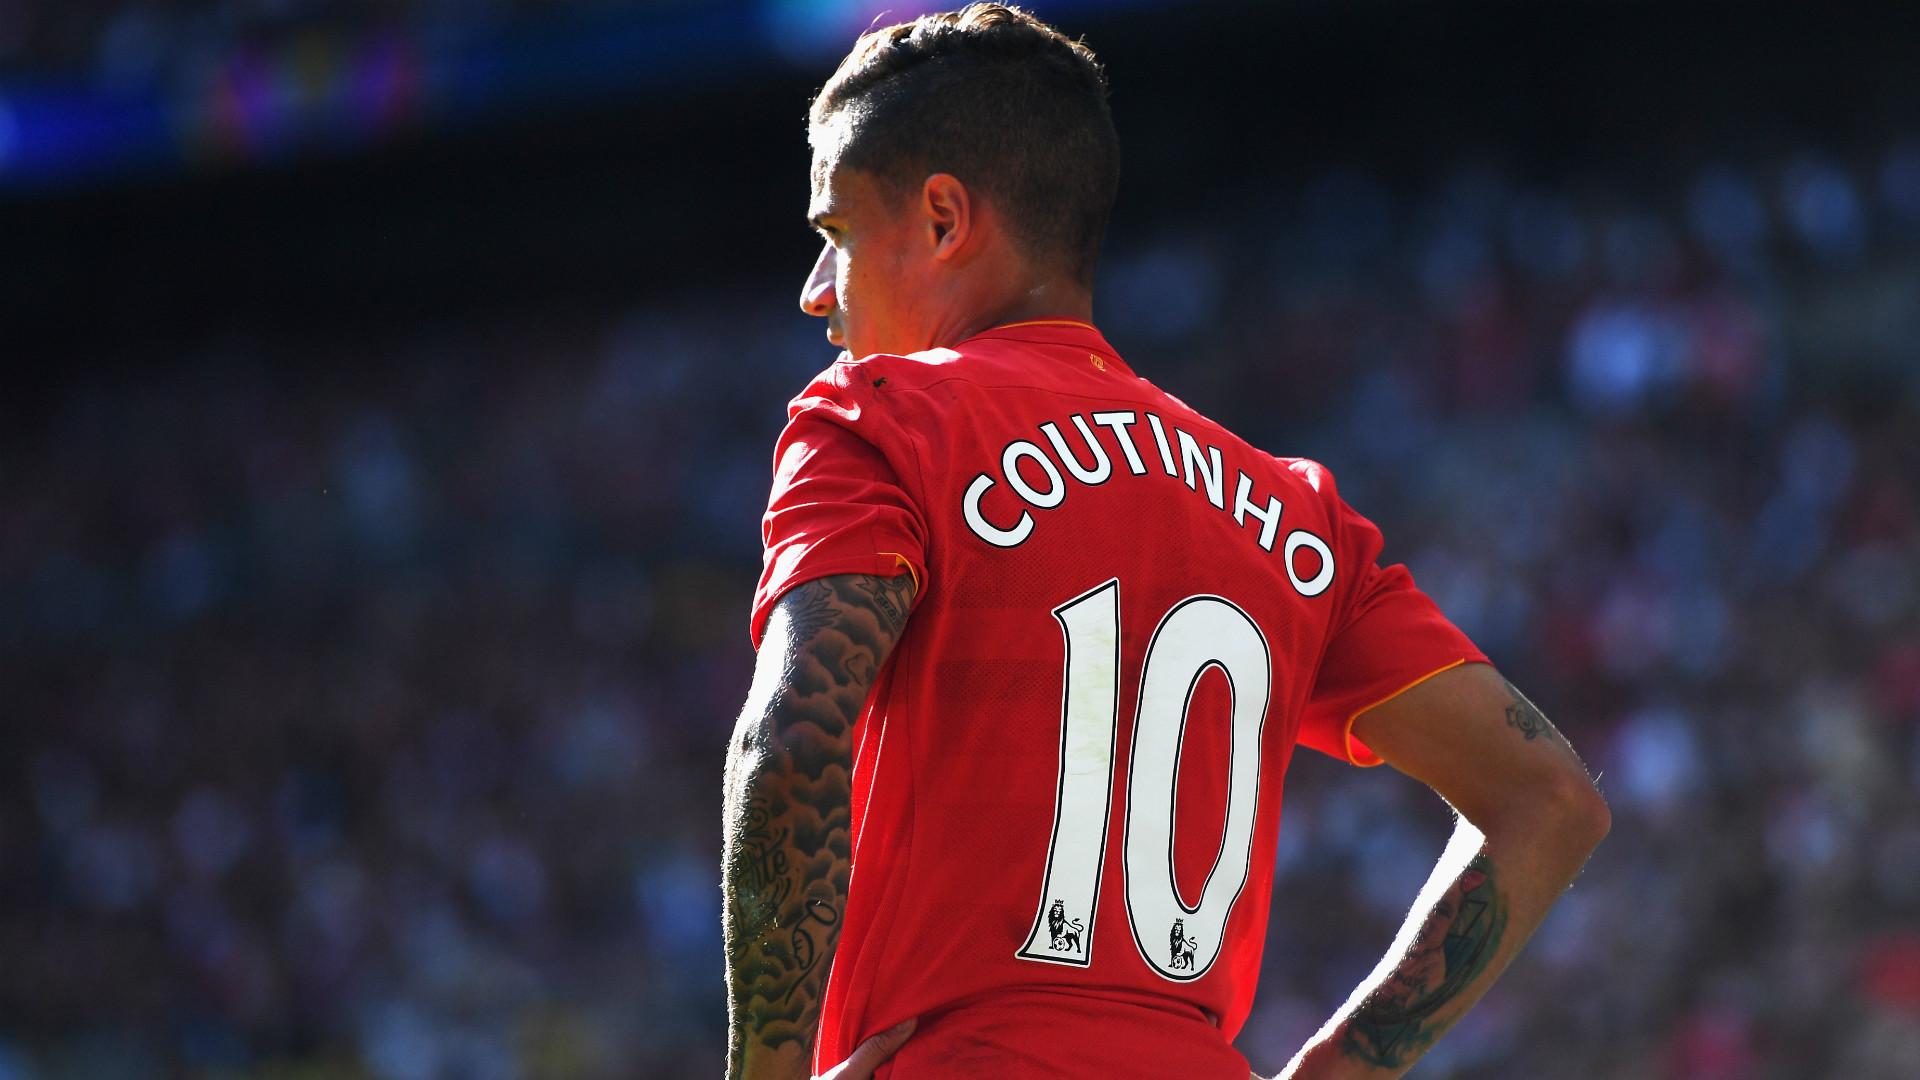 Transferi uživo: Coutinho napustio trening Liverpoola, dolazak u Barcu sve izvjesniji